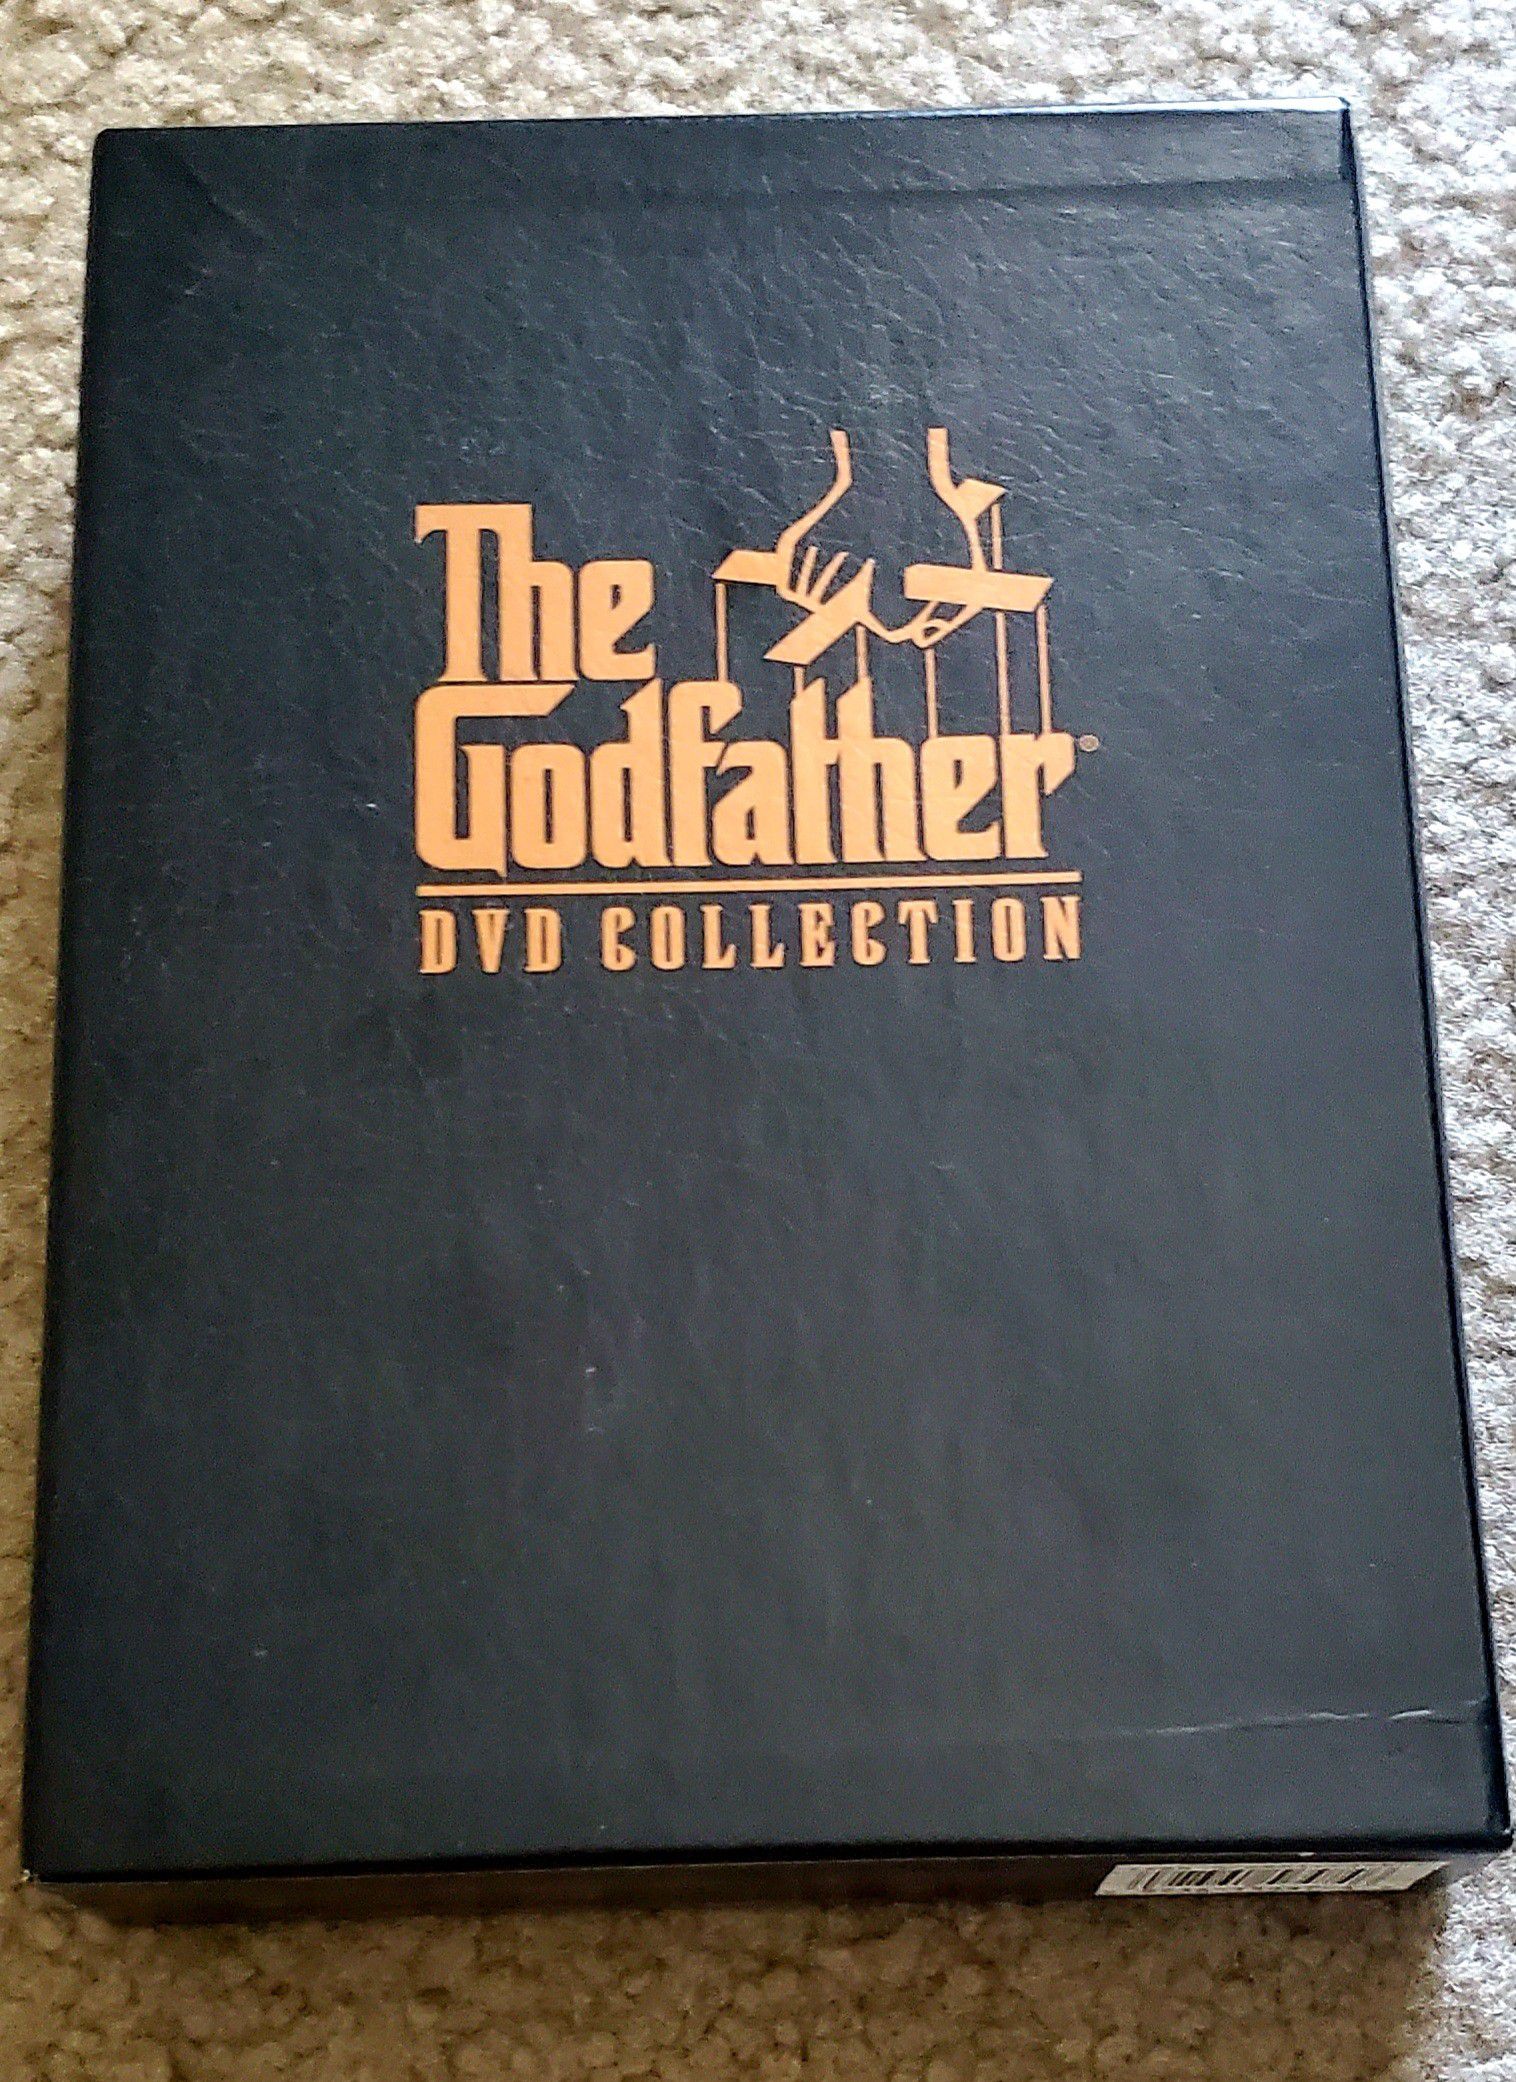 Godfather DVD set